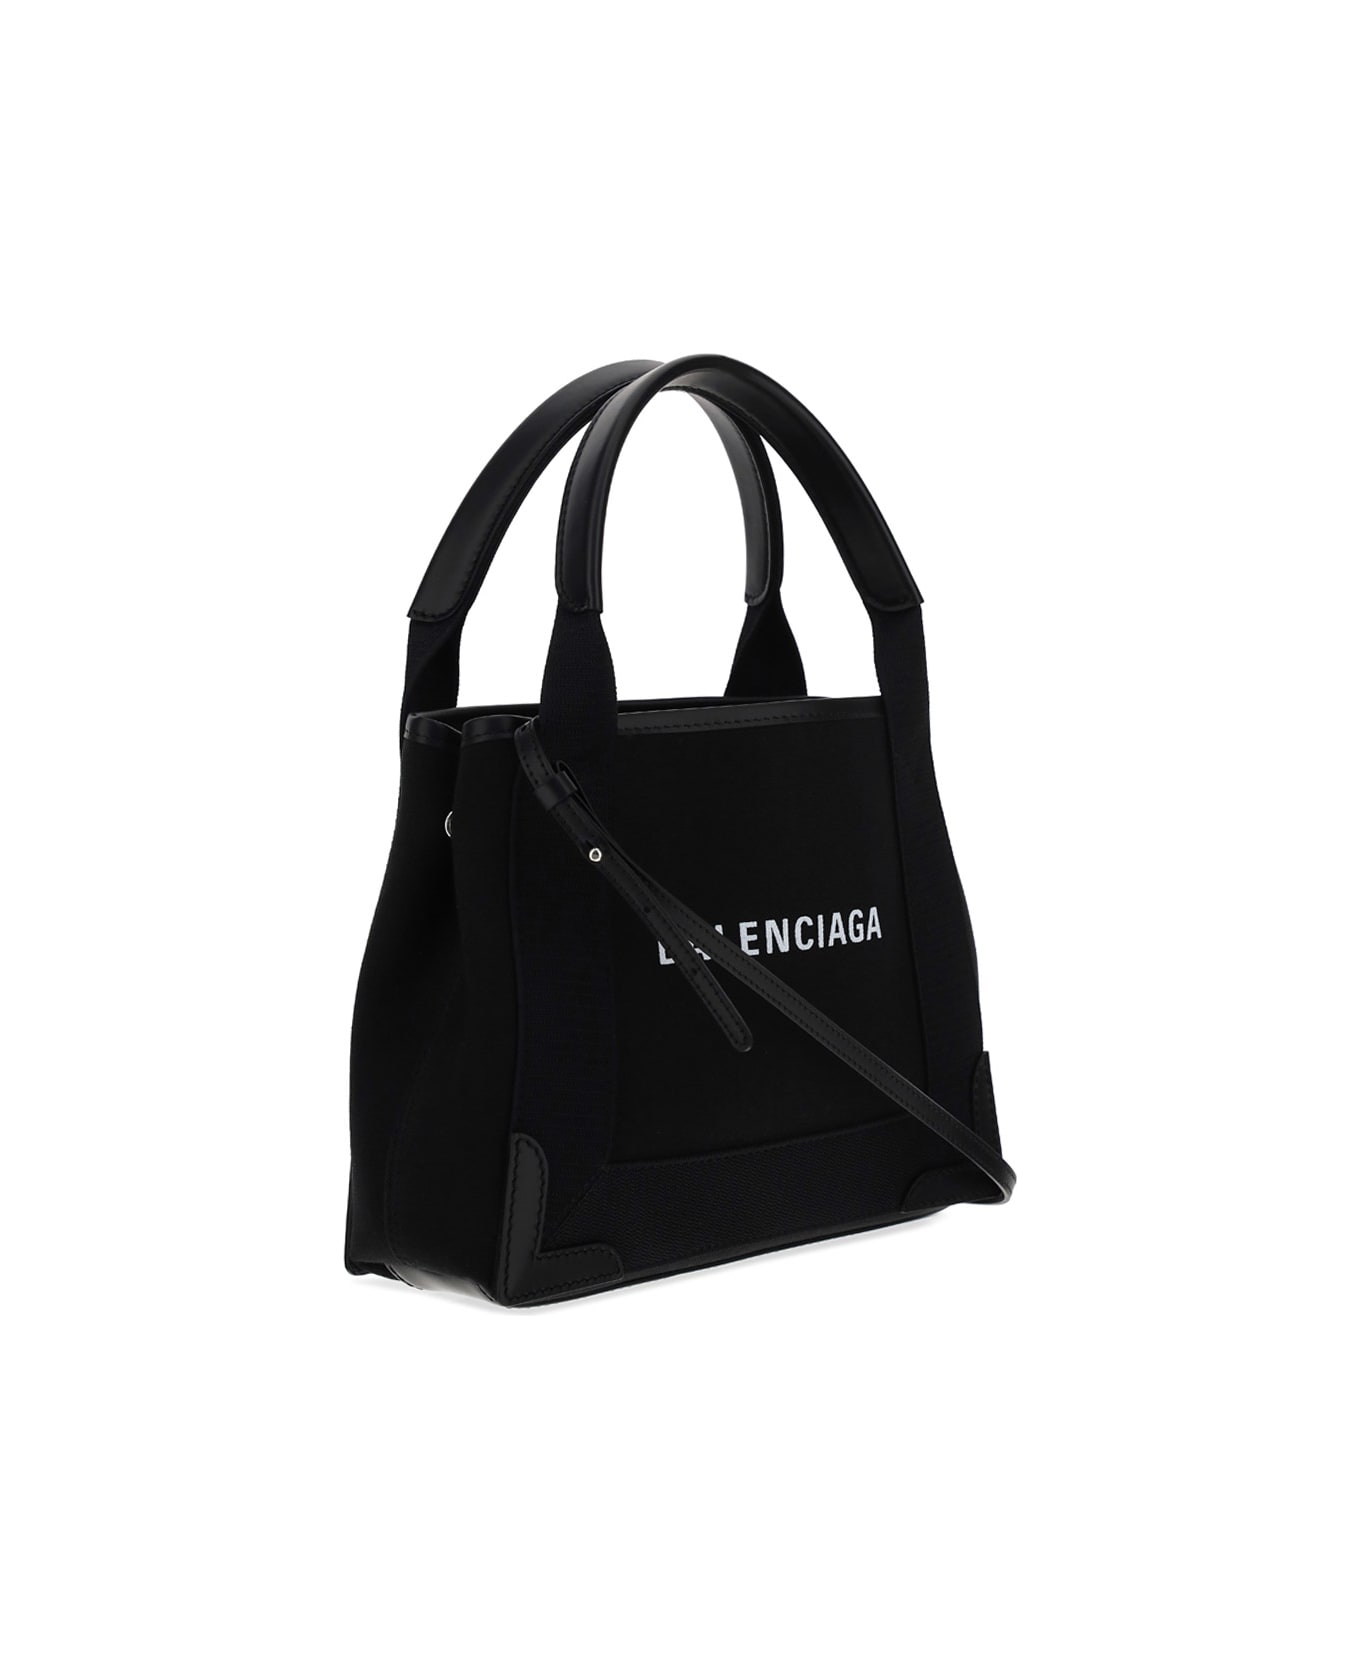 Balenciaga Cabas Handbag - Black トートバッグ